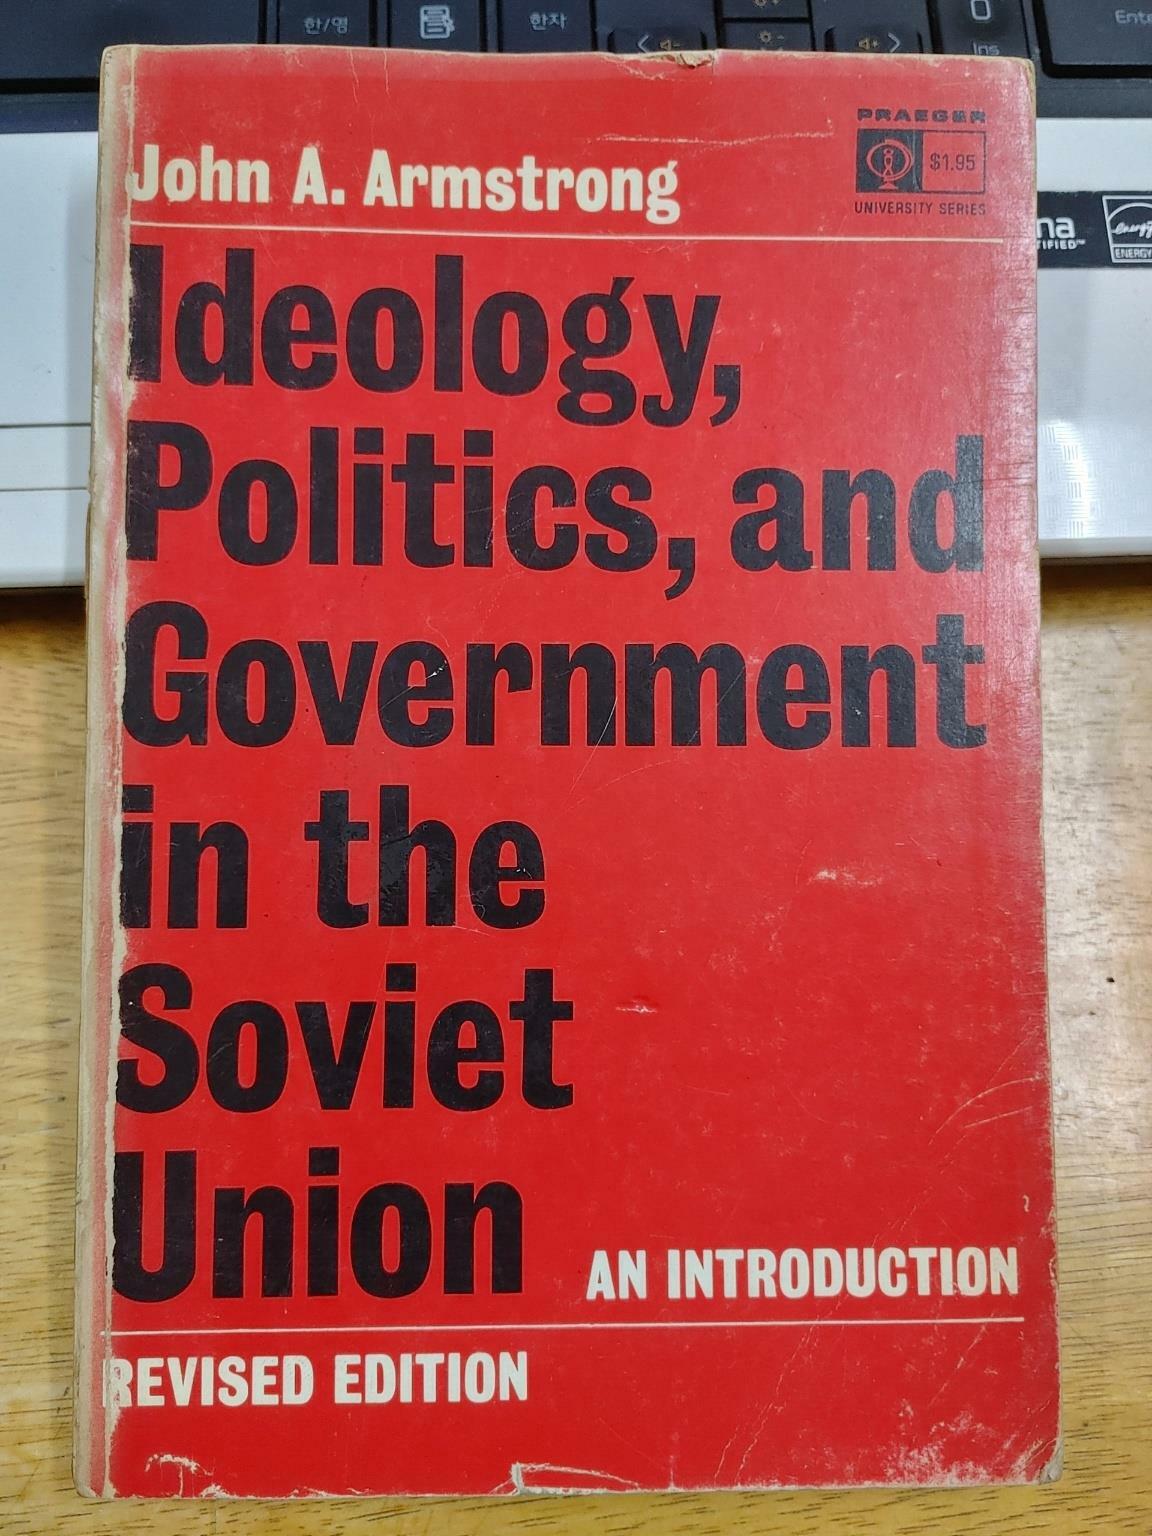 [중고] Ideology politics, and government in the soviet union : An Introduction Revised Edition (paperback)